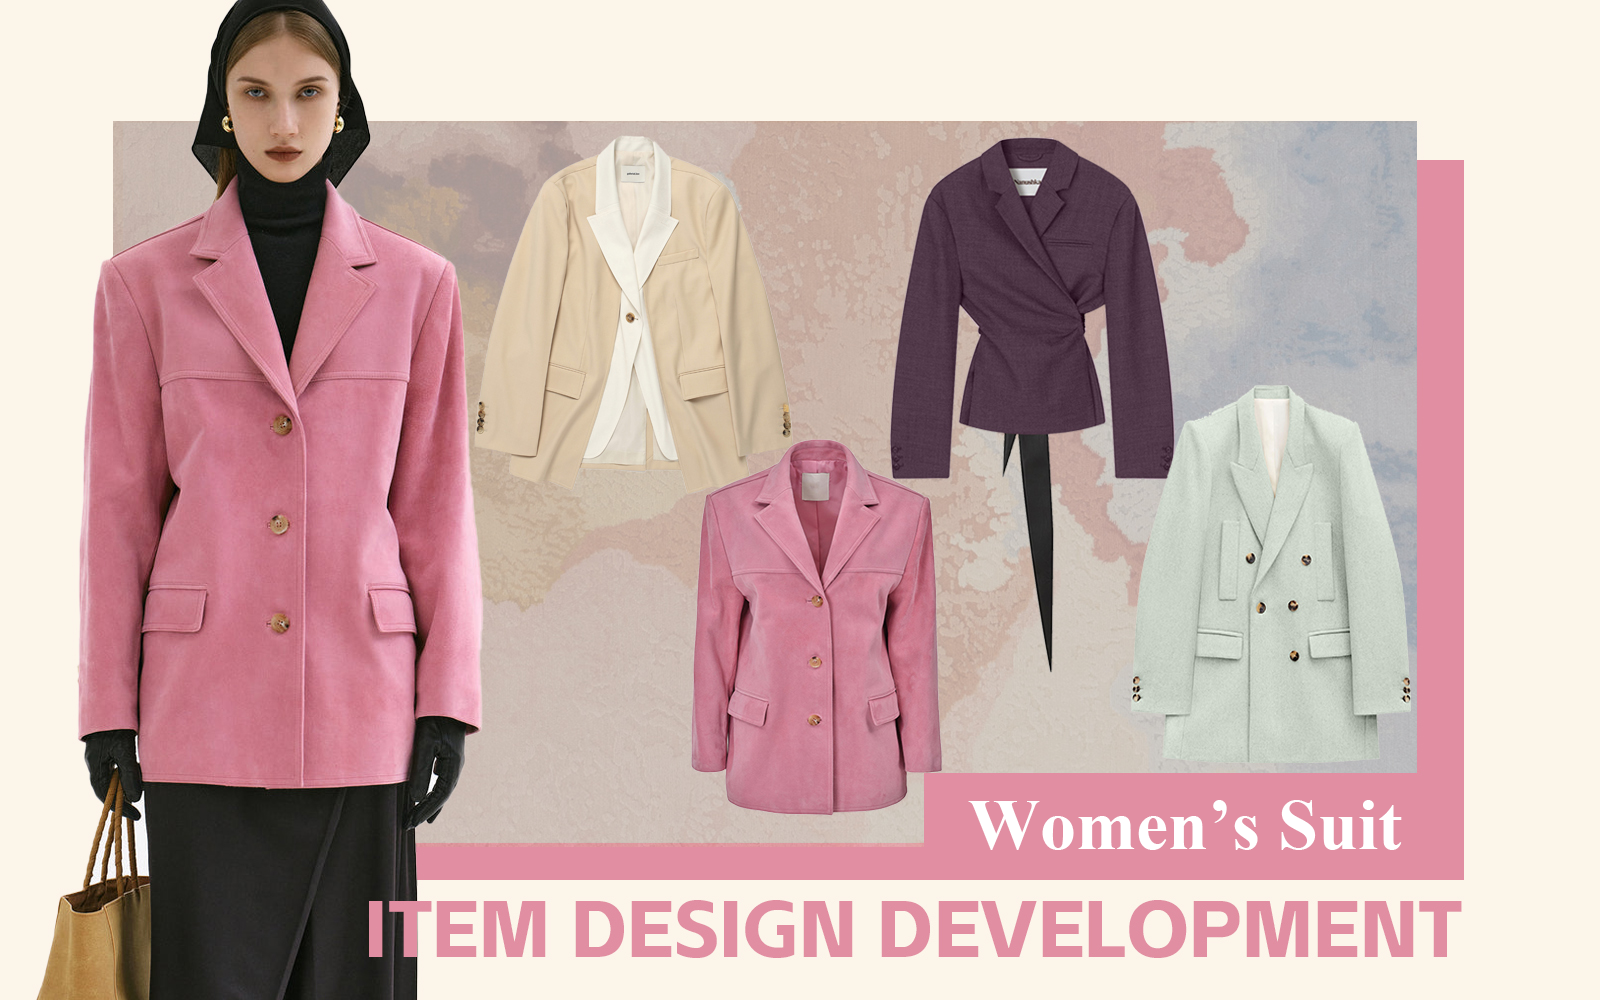 Modern Commuter -- The Design Development of Women's Suit